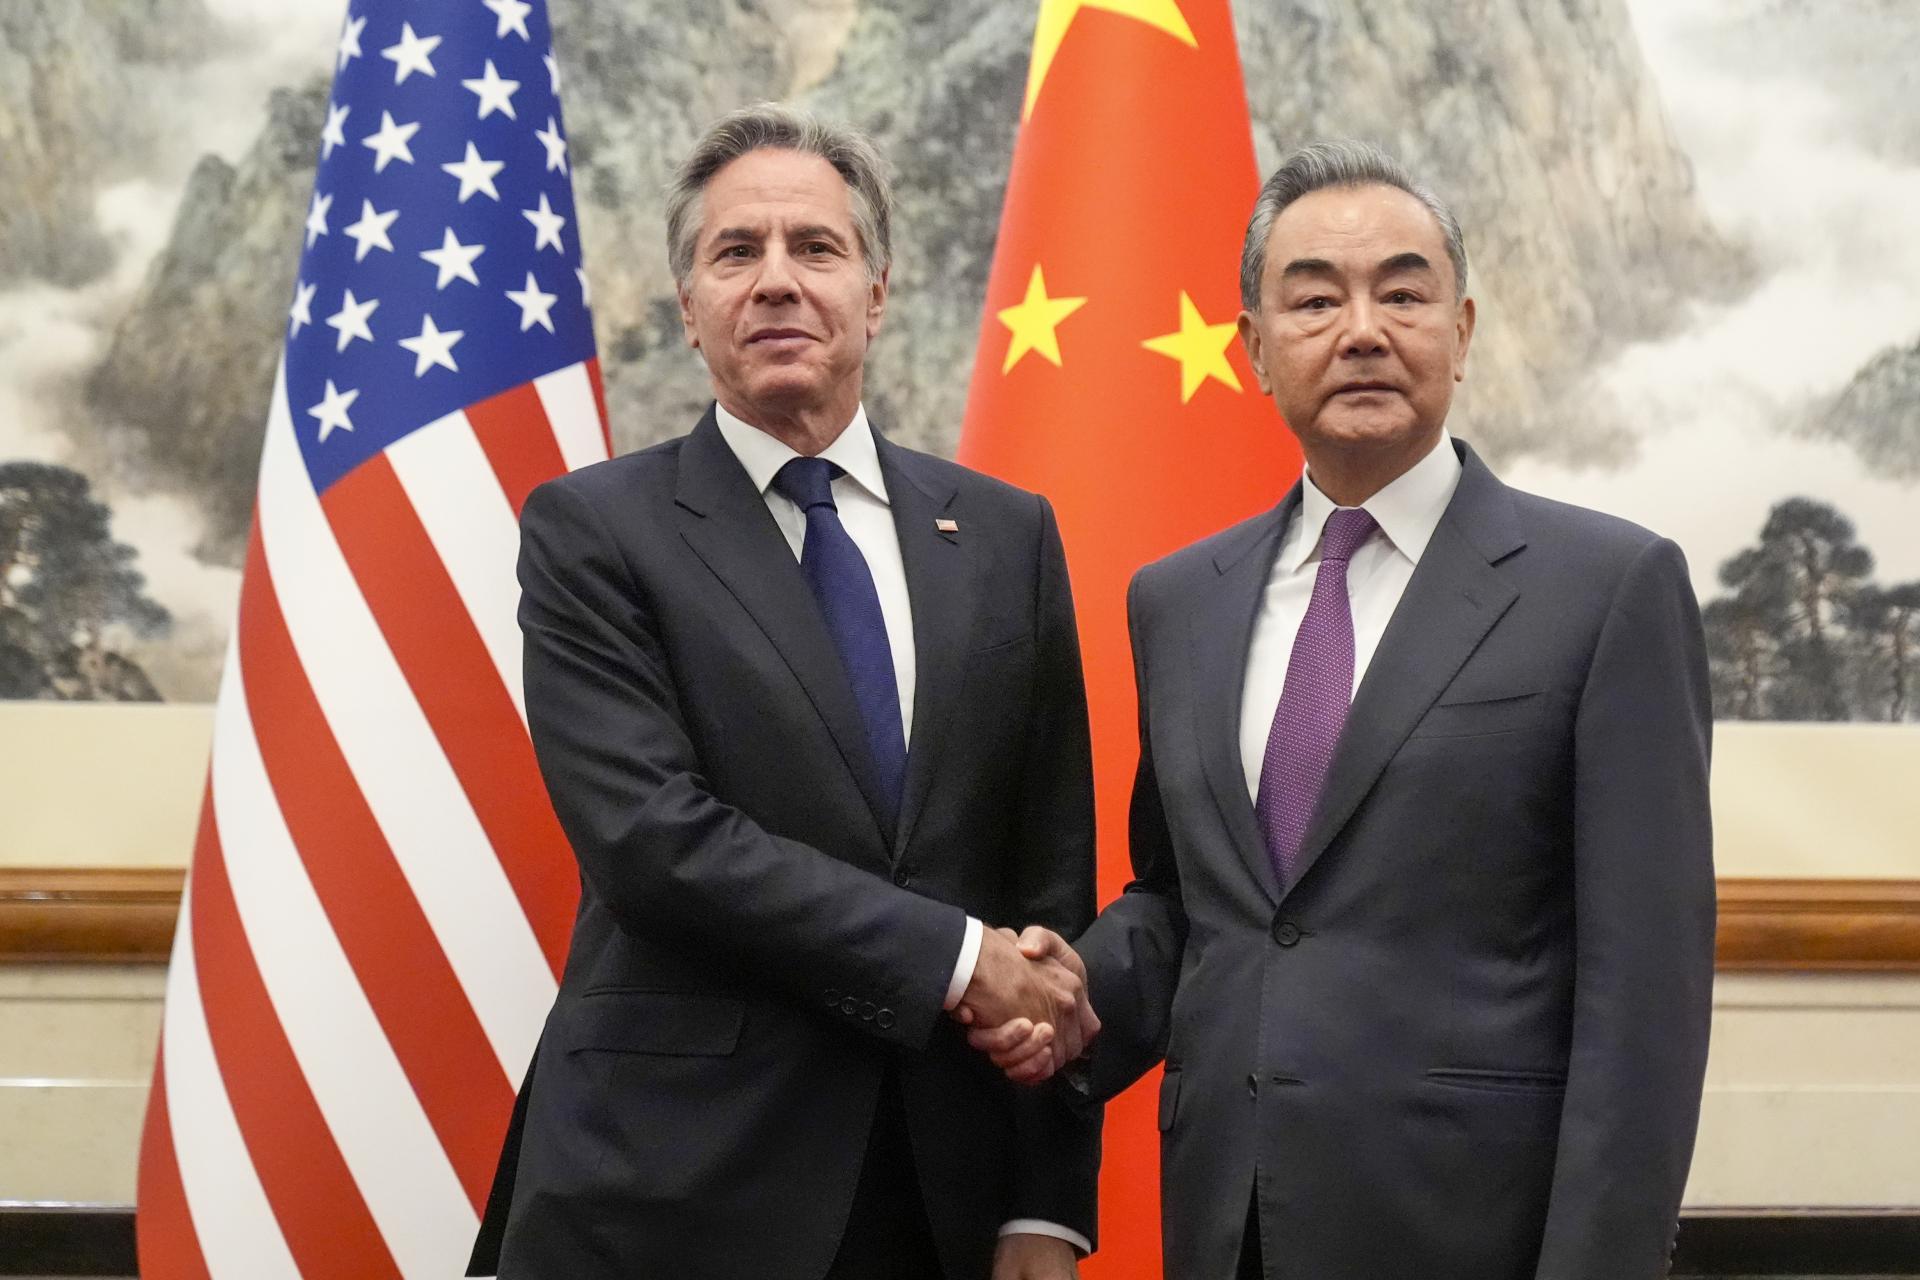 Blinken dúfa v pokrok pri rokovaní s Čínou, Wang poukázal na rastúce problémy